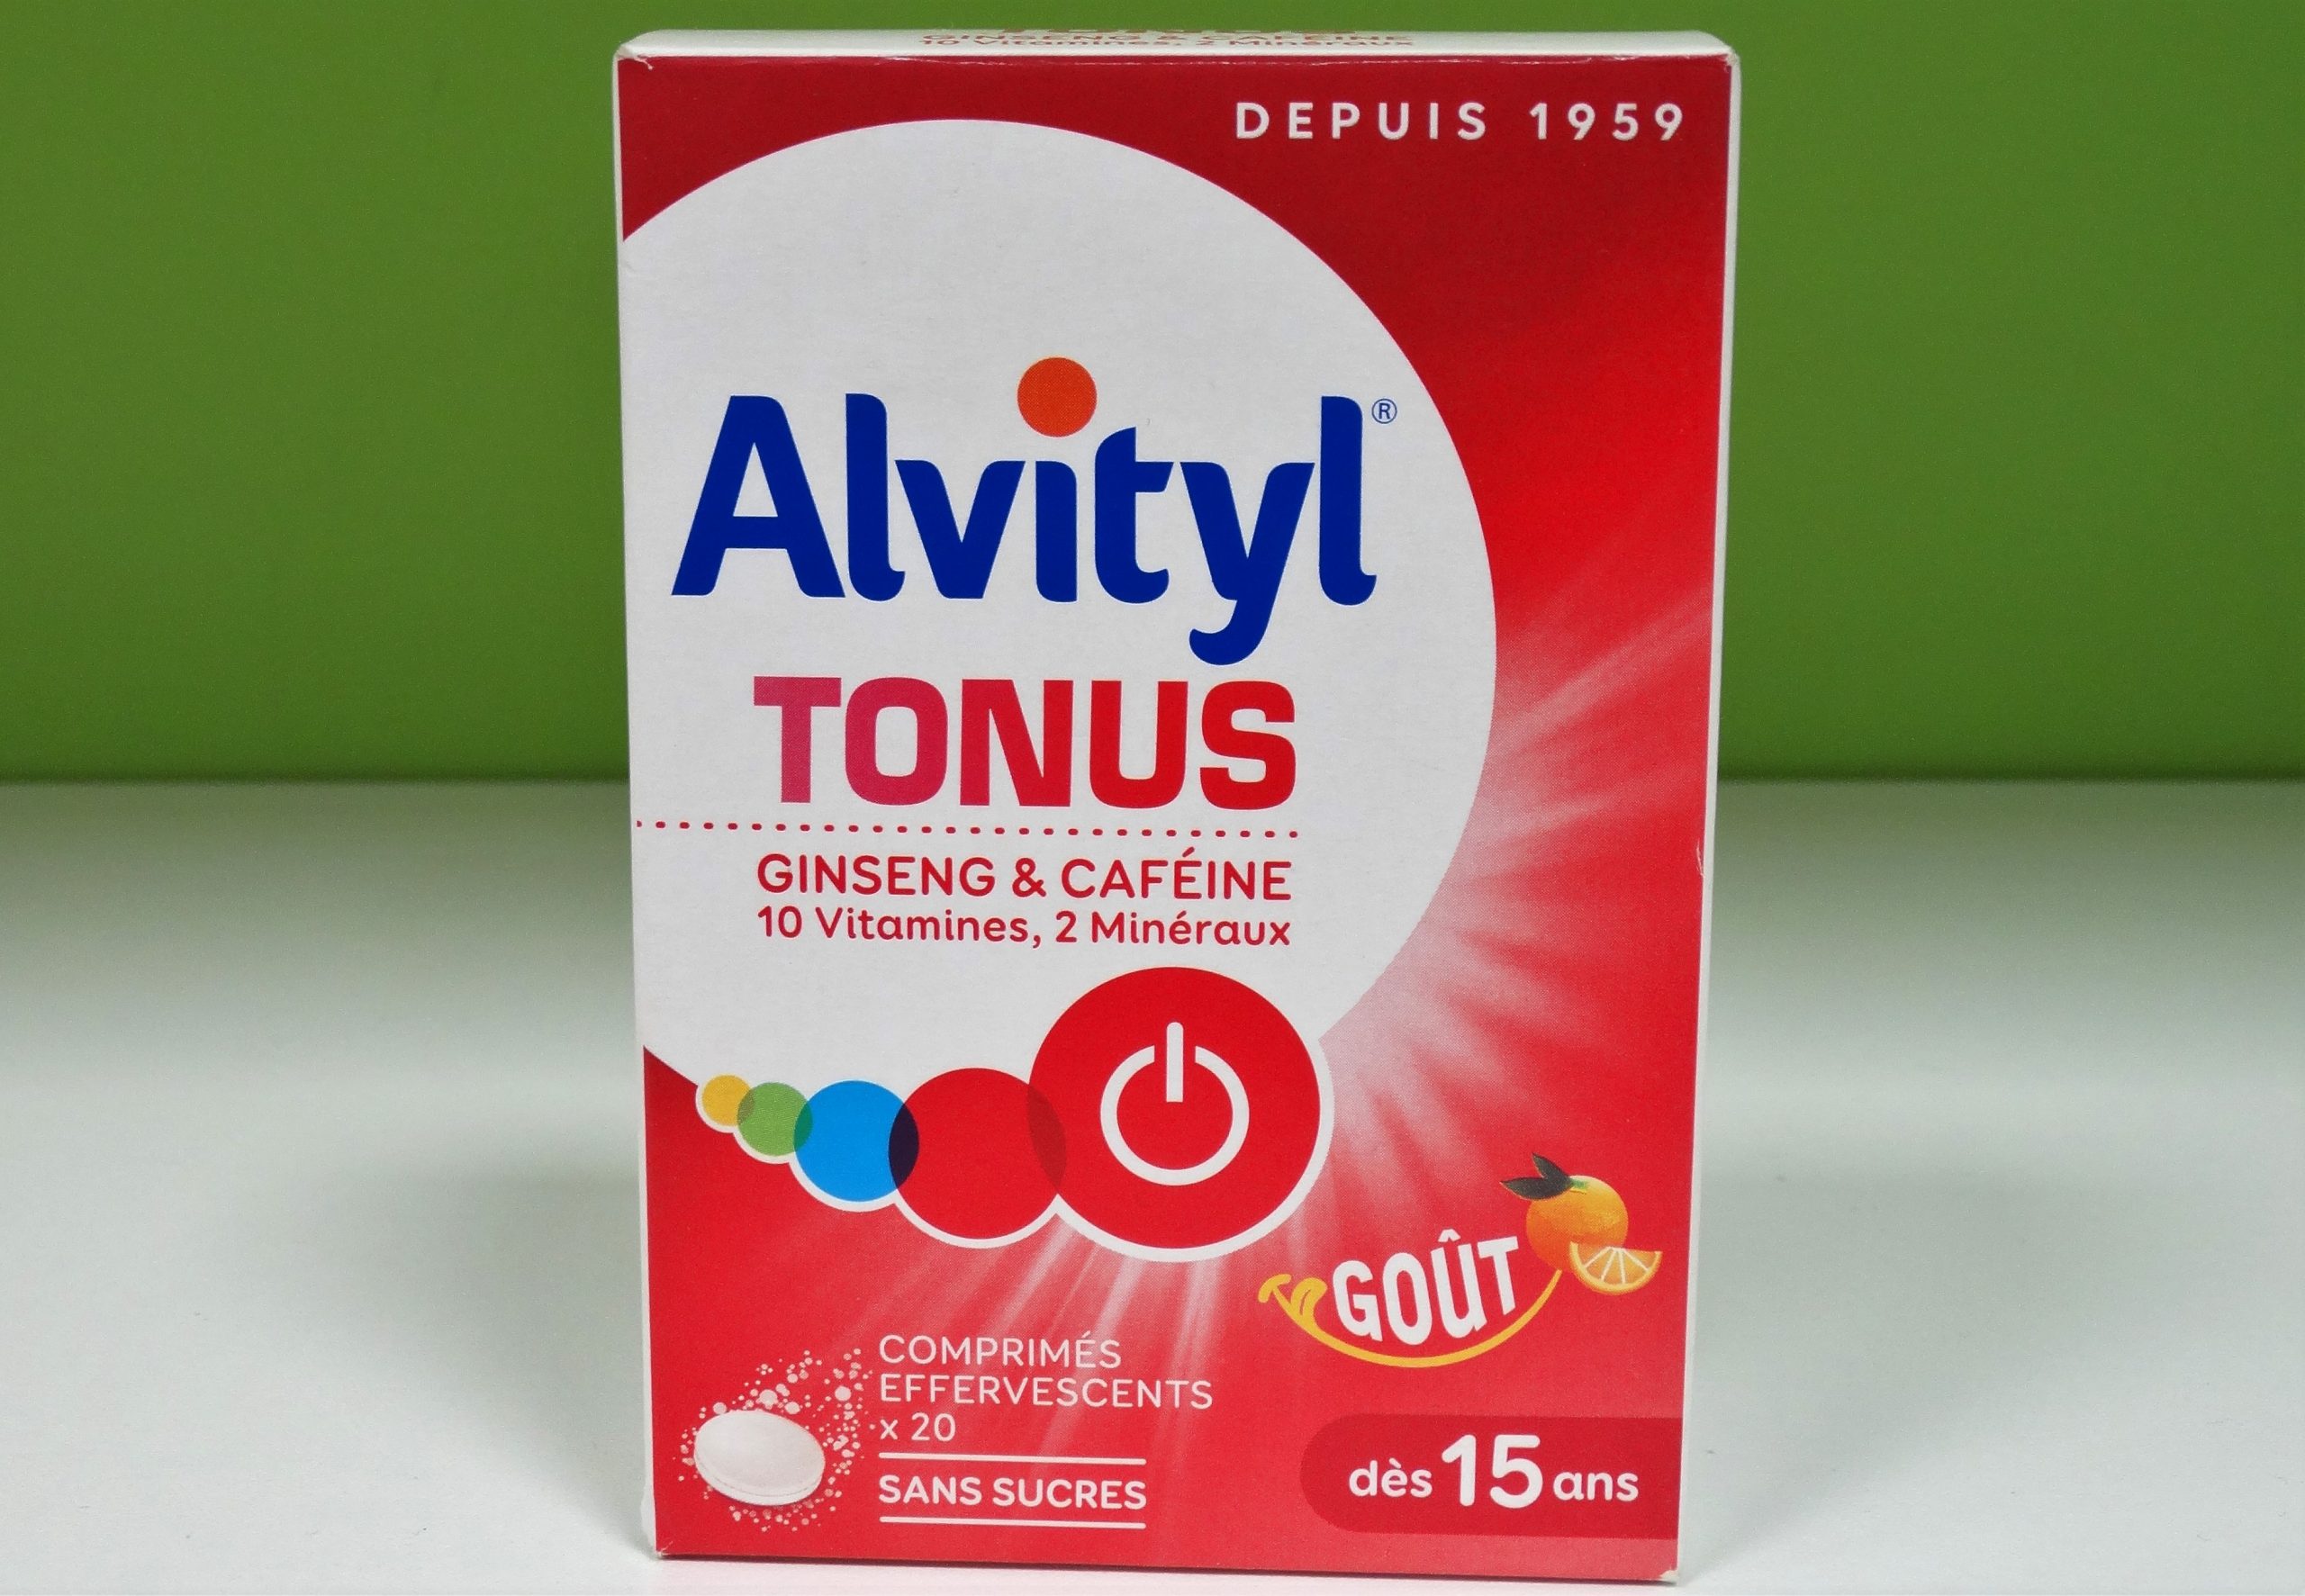 Los comprimidos de Alvityl Tonus son un producto antiasténico (antifatiga). Tienen una fórmula única que contiene vitaminas B, oligoelementos, minerales, ginseng y cafeína